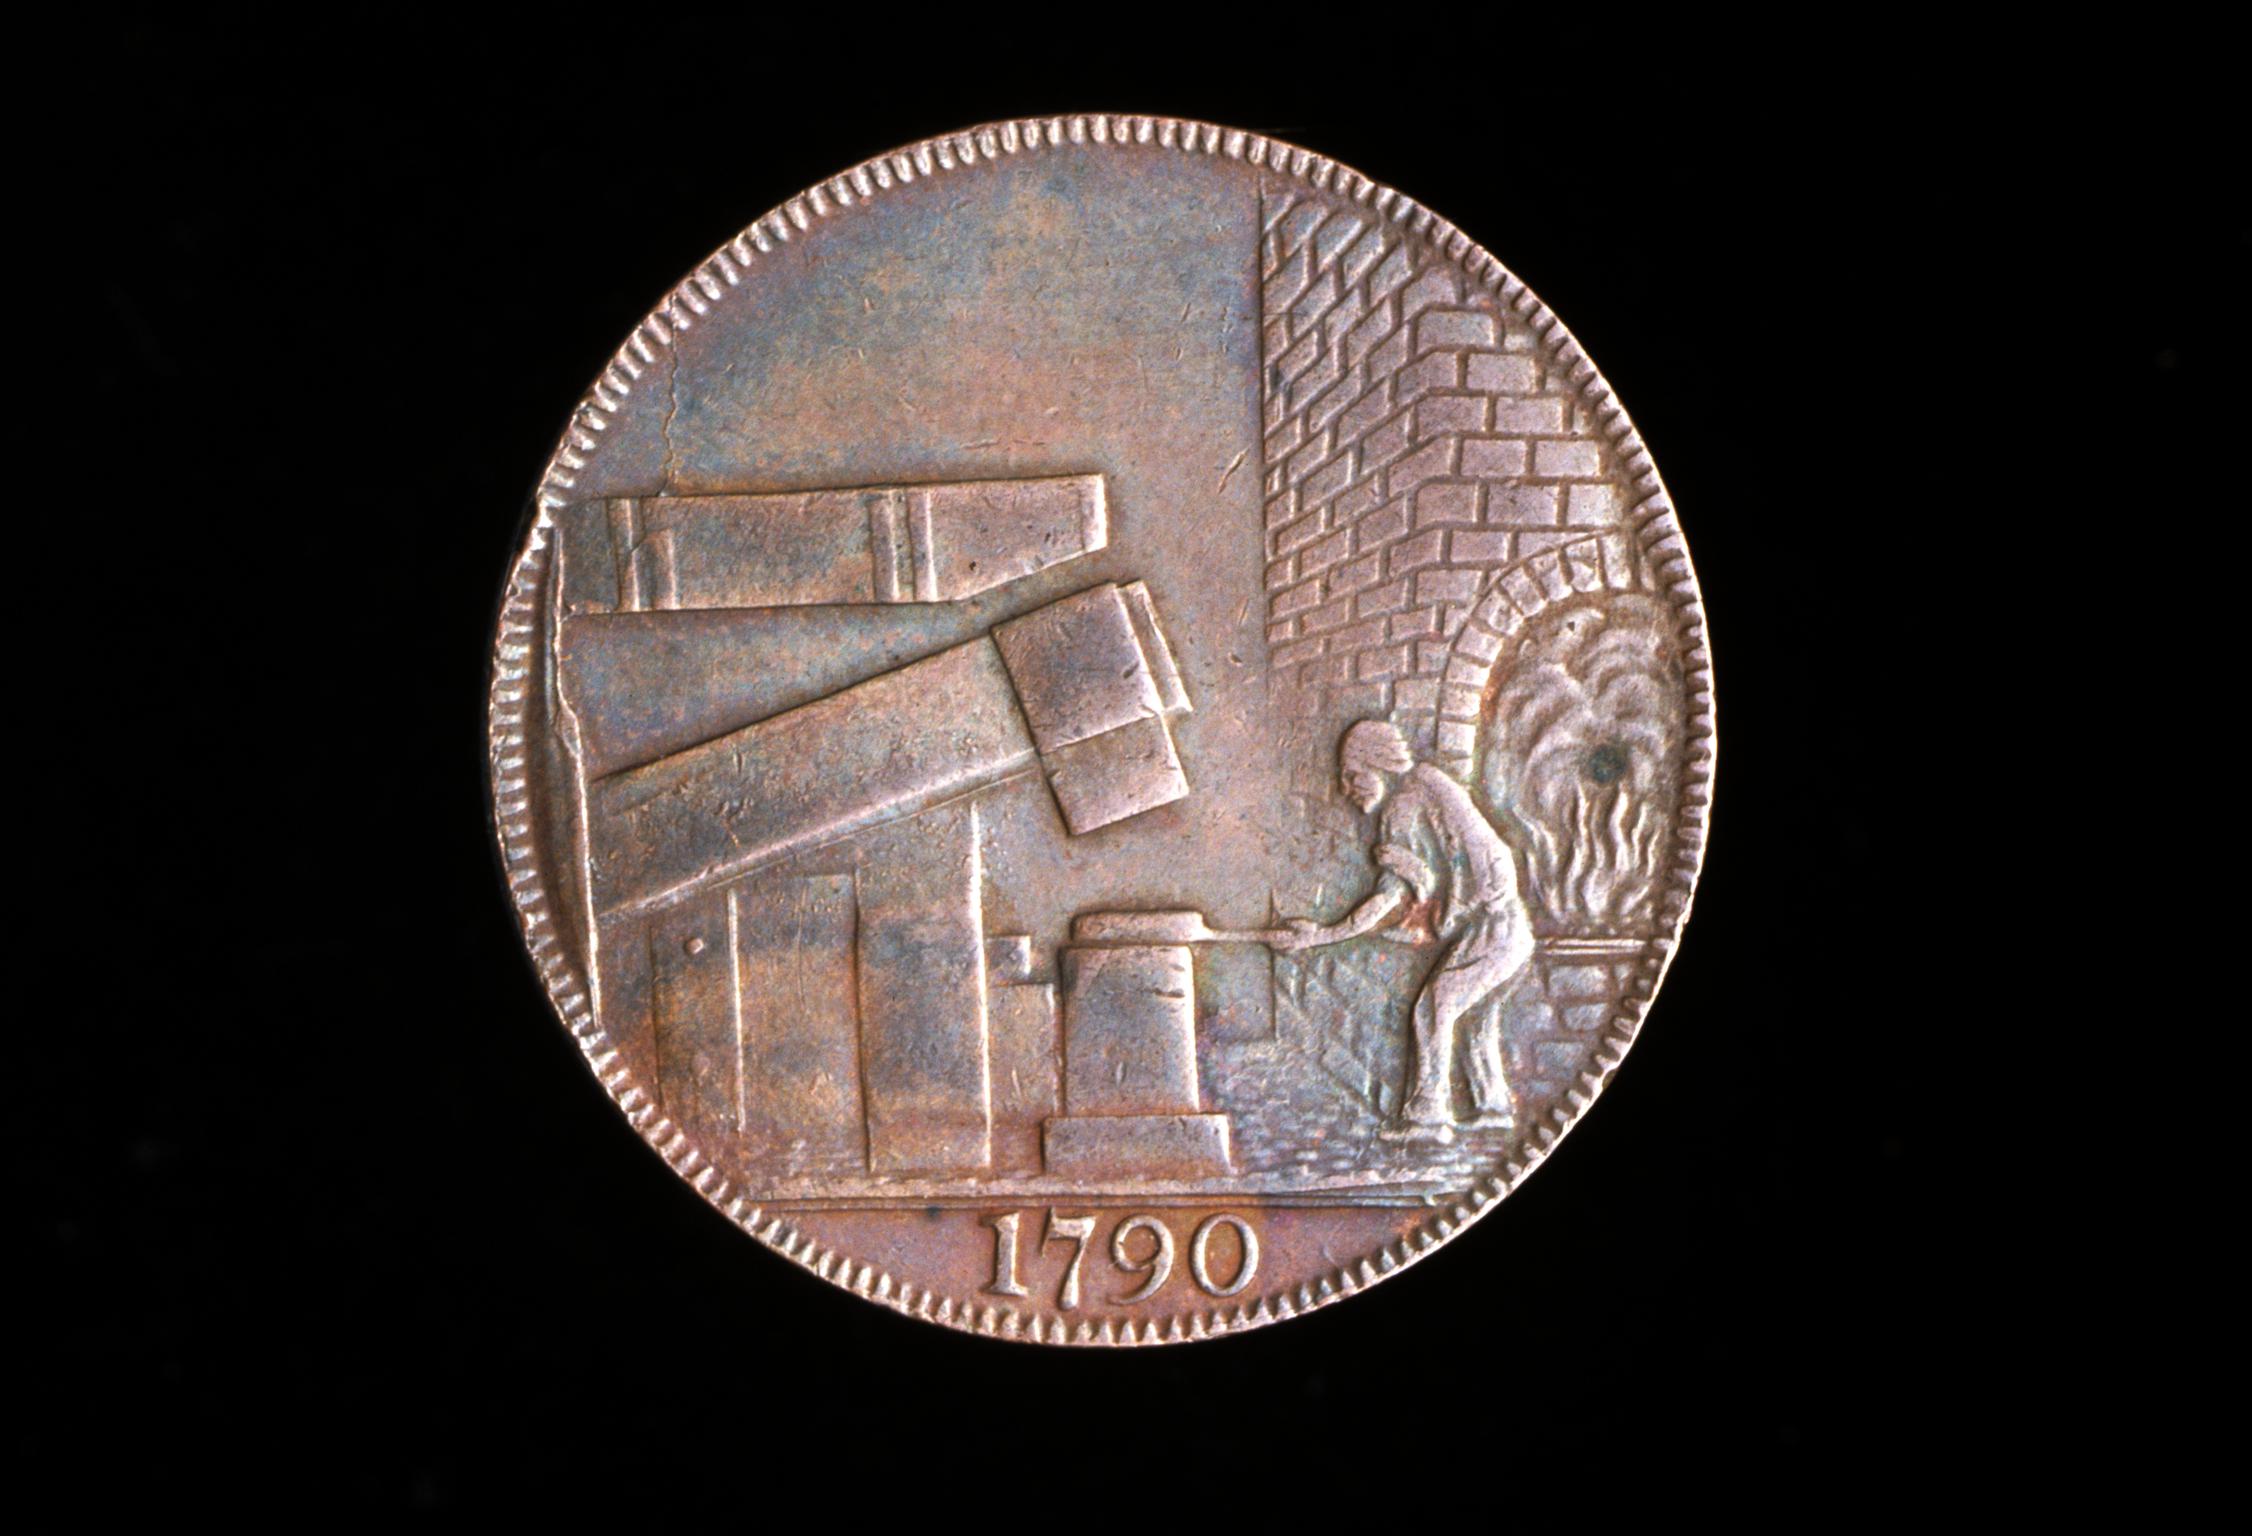 18th century token: John Wilkinson (Forge)